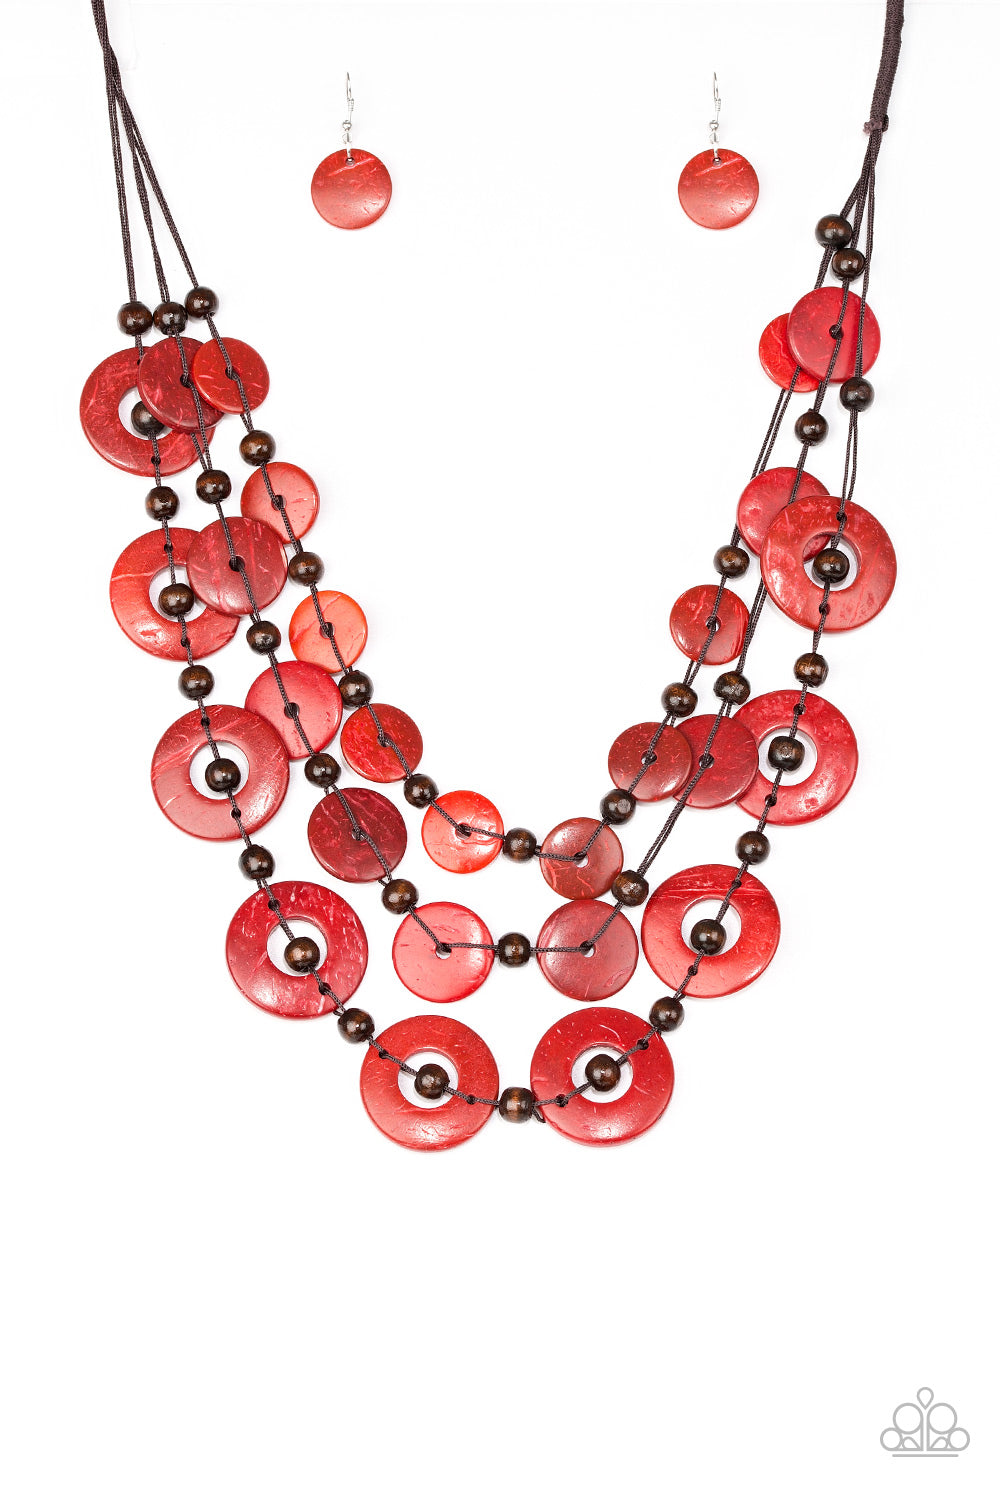 Catalina Coastin Red Paparazzi Necklace Cashmere Pink Jewels - Cashmere Pink Jewels & Accessories, Cashmere Pink Jewels & Accessories - Paparazzi